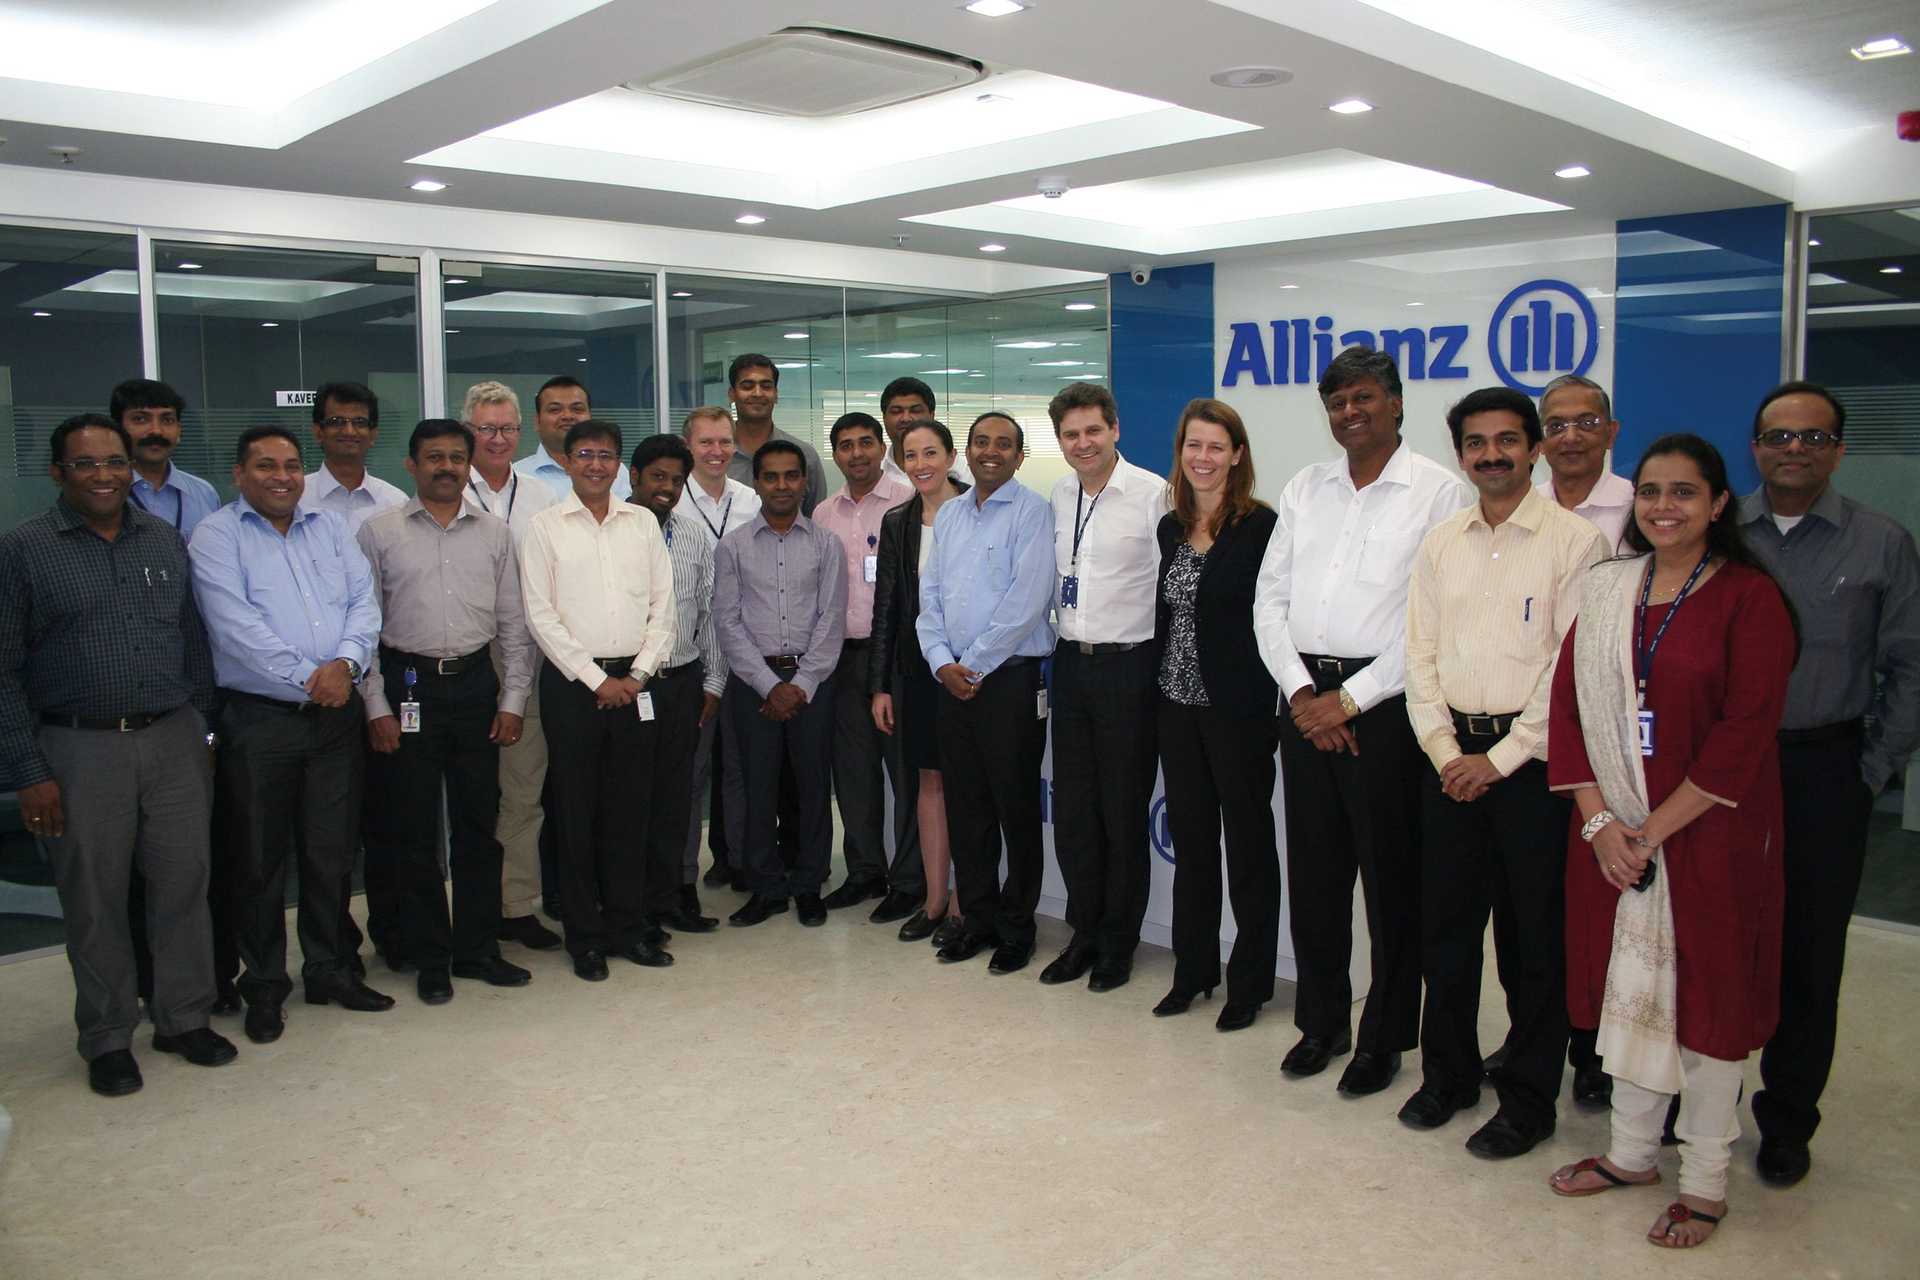 Picture of Allianz Cornhill Information Services in Indien gegründet